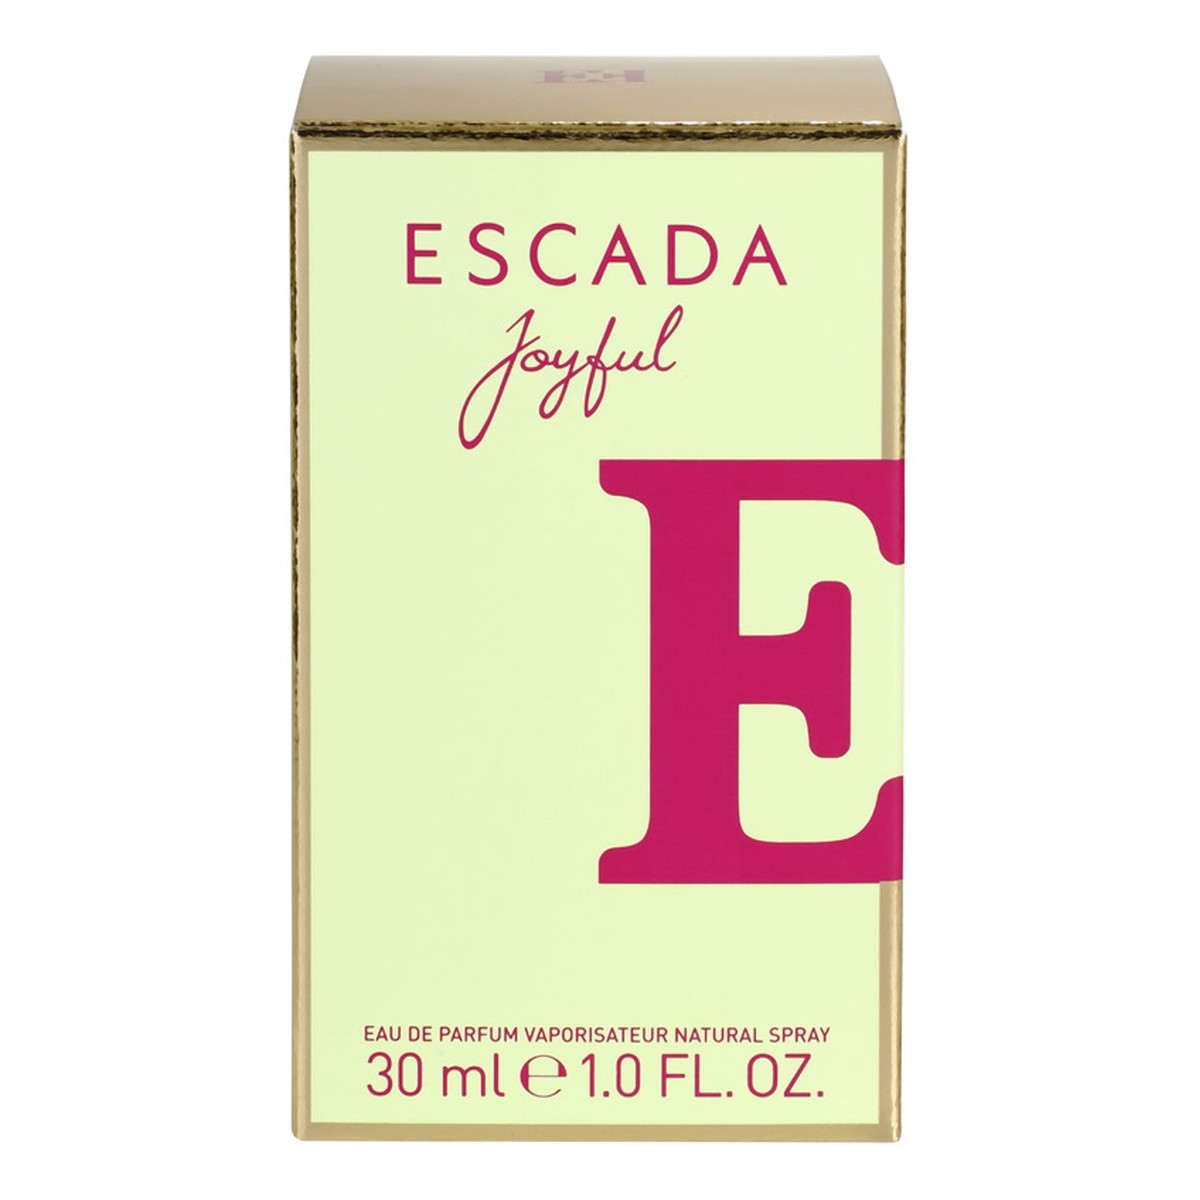 Escada Joyful woda perfumowana dla kobiet 30ml